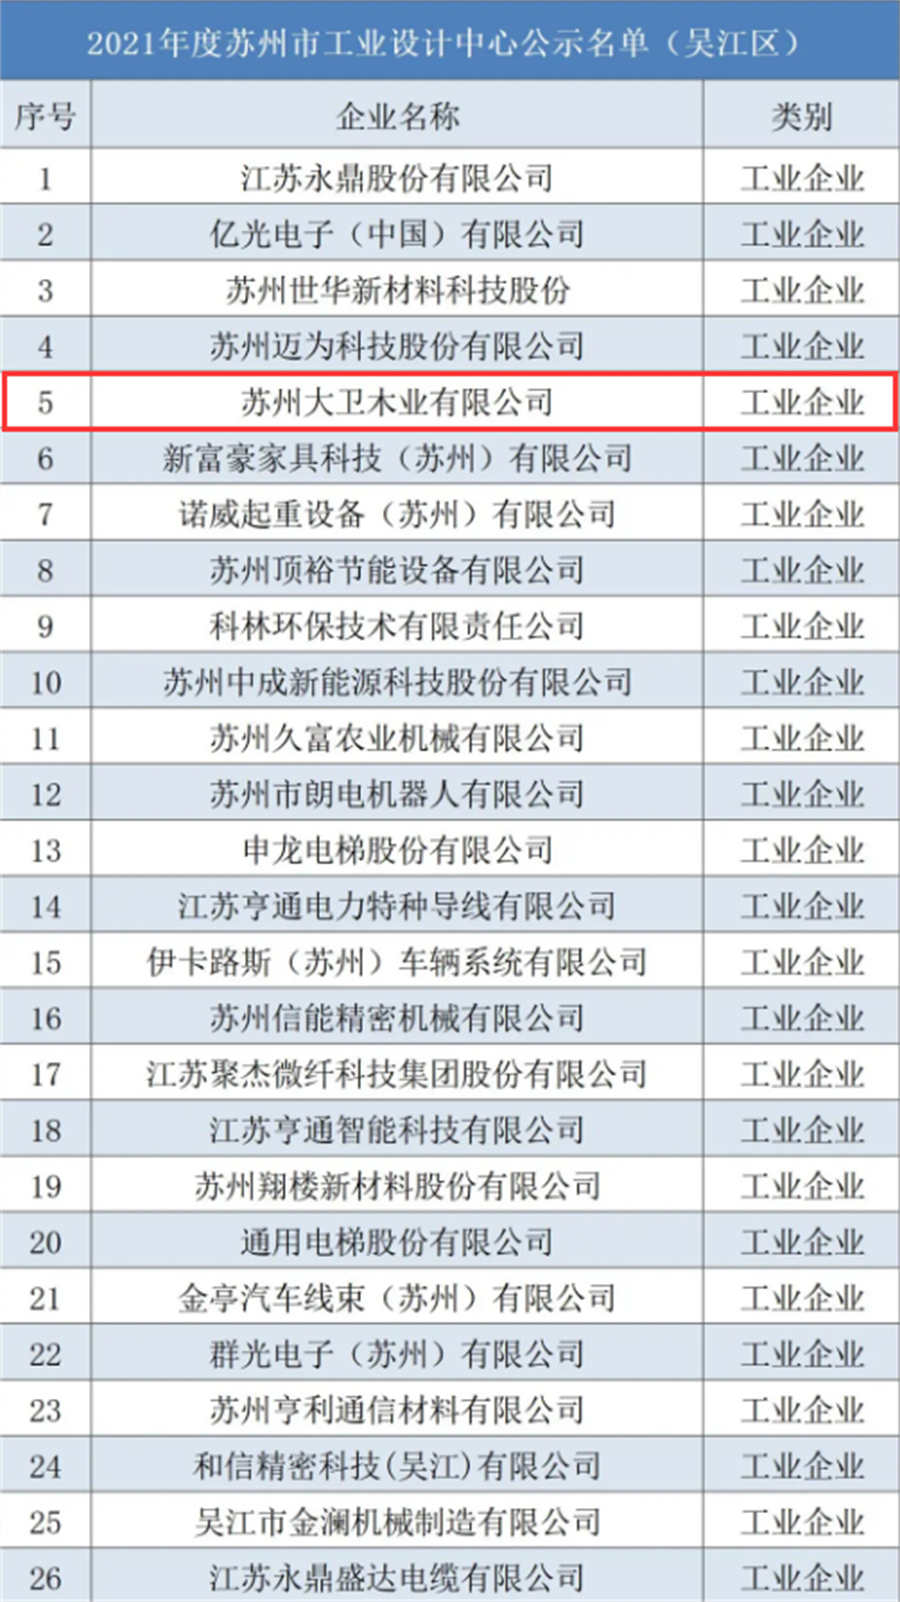 2021年度苏州市工业设计中心公示名单(吴江区)